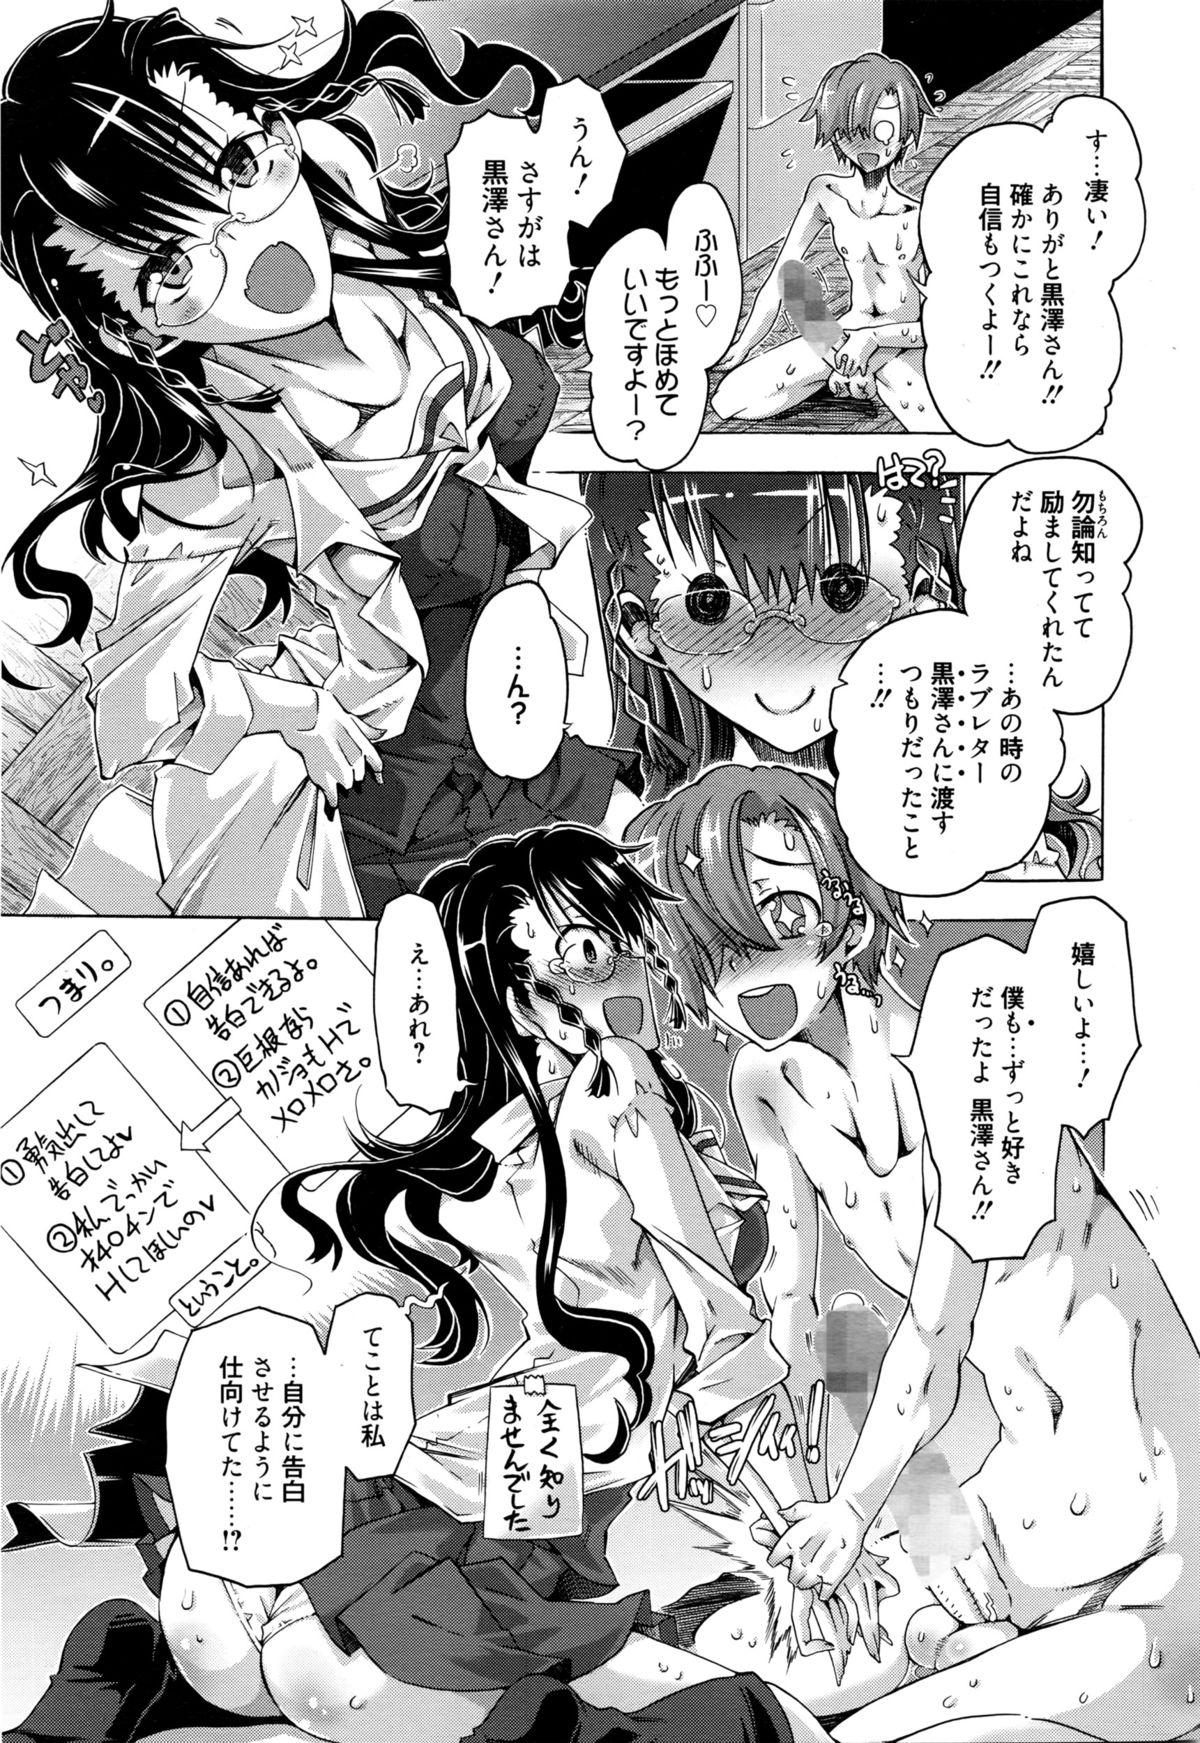 Manga Bangaichi 2016-03 page 16 full